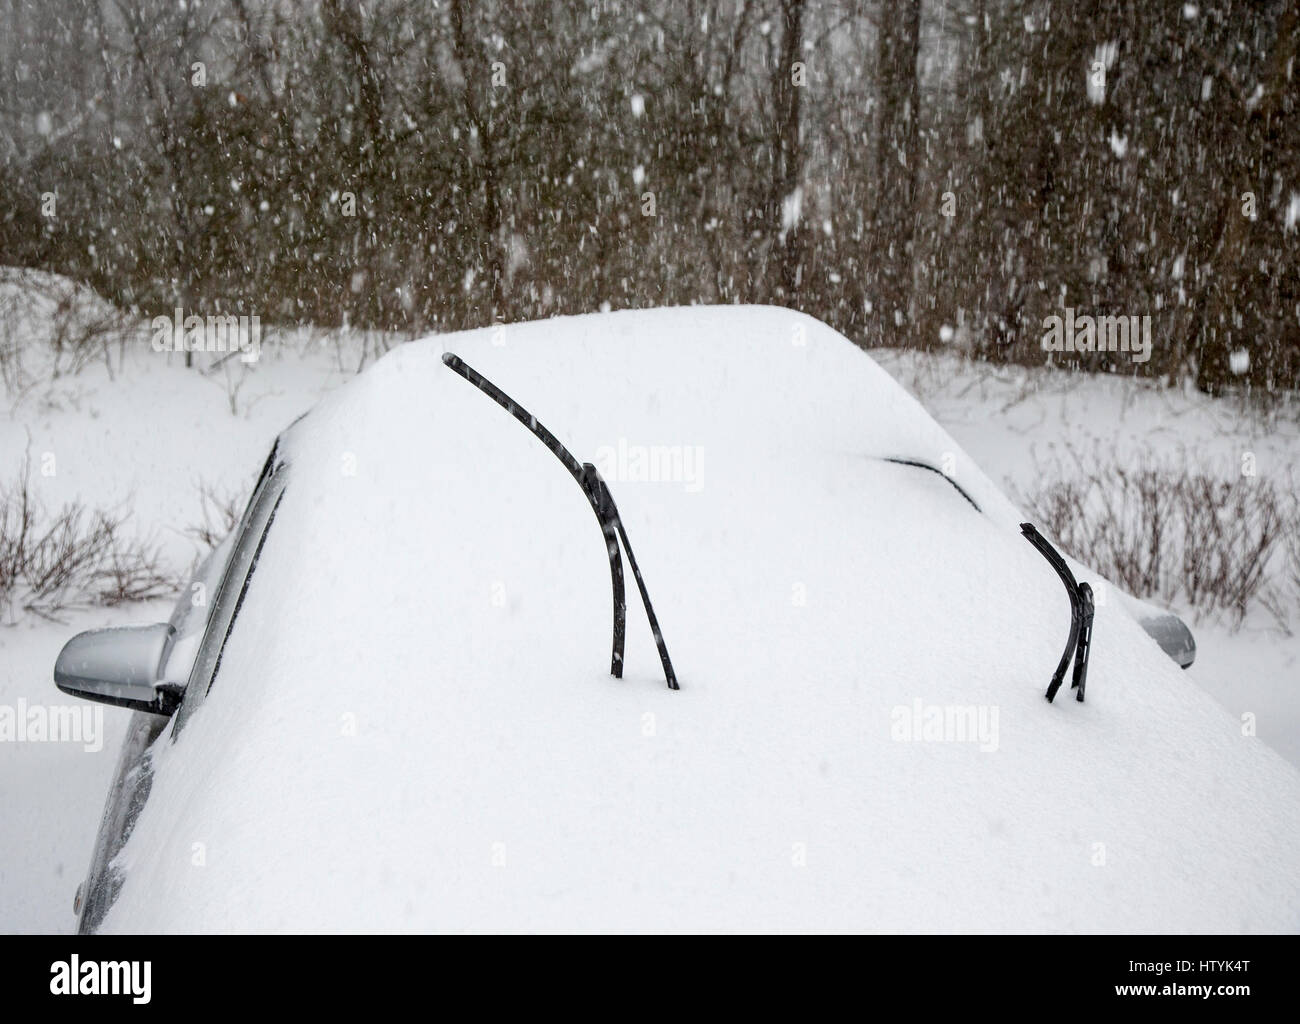 Les essuie-glace sur une voiture pendant une tempête de neige Banque D'Images